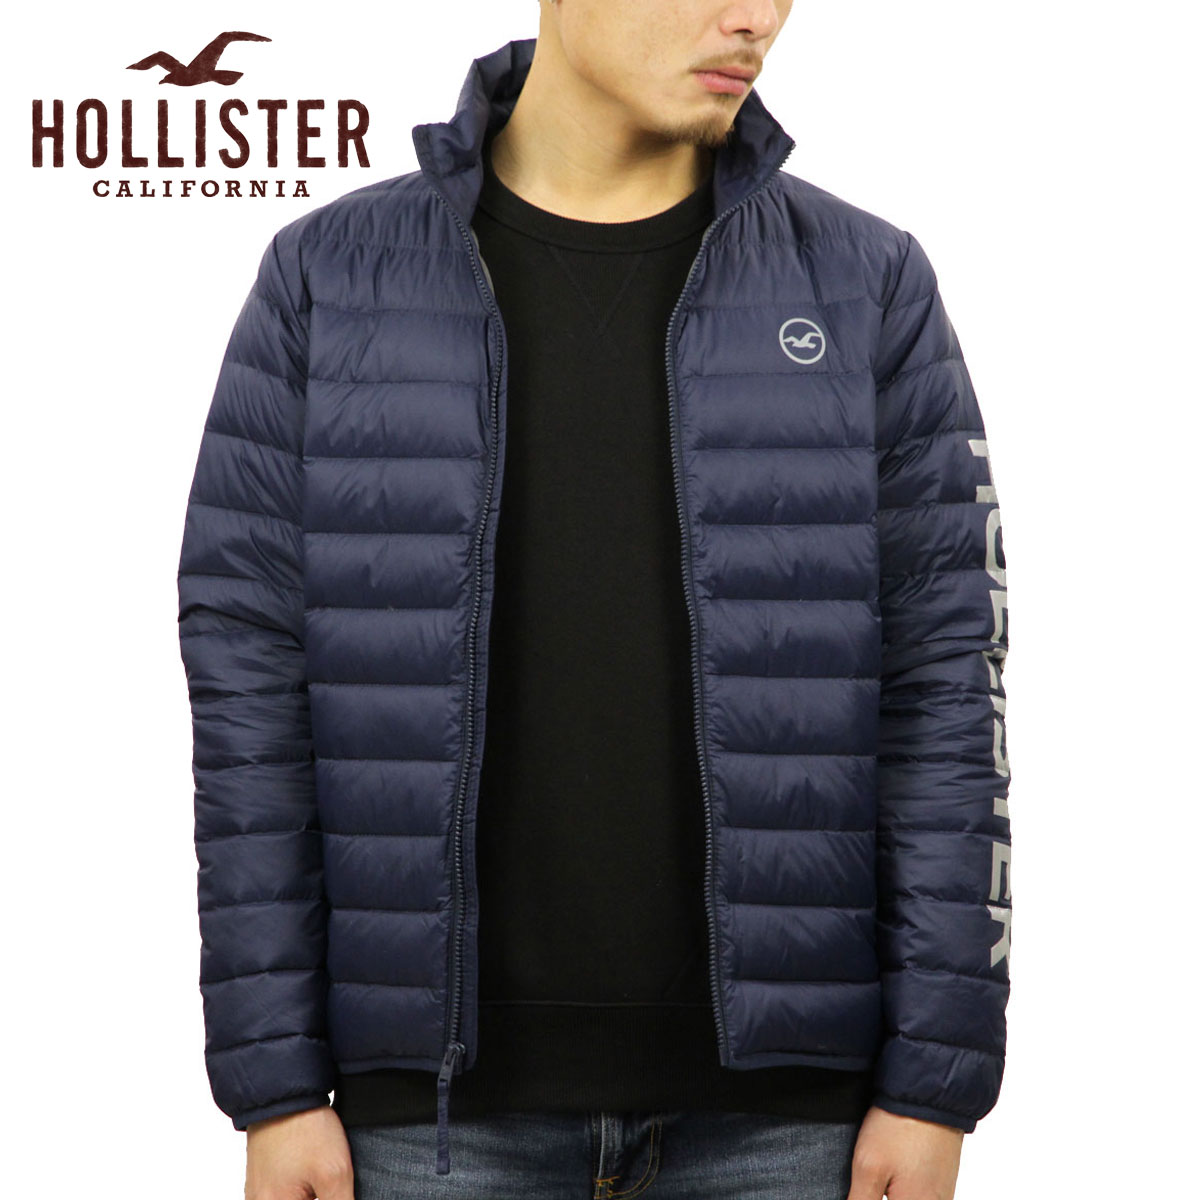 hollister puffer jacket review